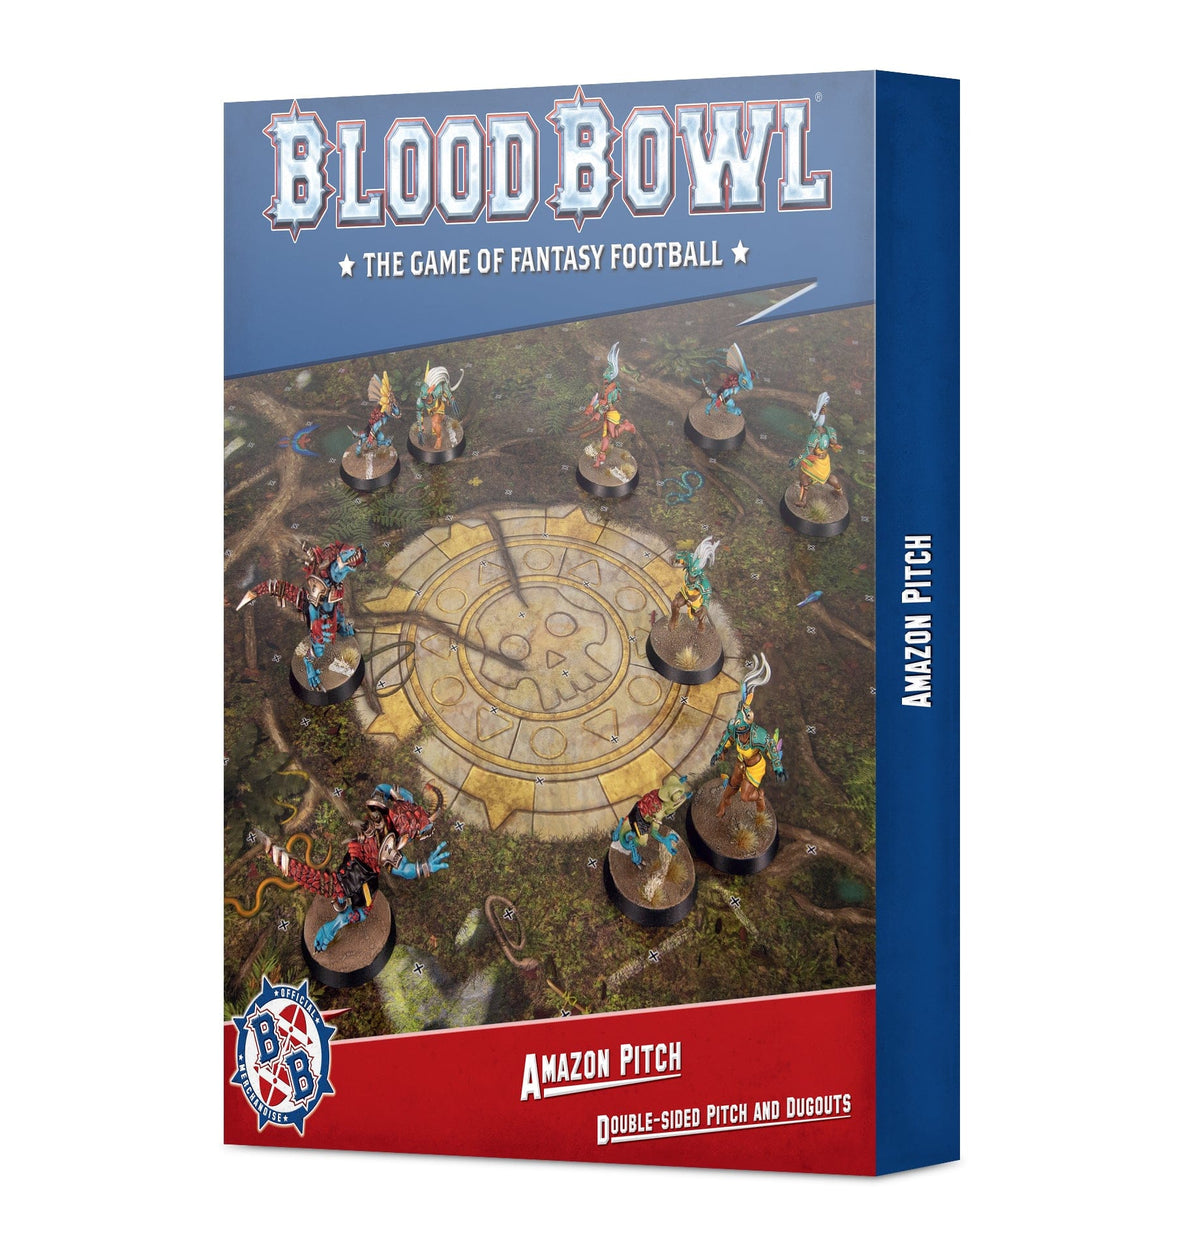 Warhammer - Bloodbowl: Amazon Team - Pitch & Dugouts - Third Eye